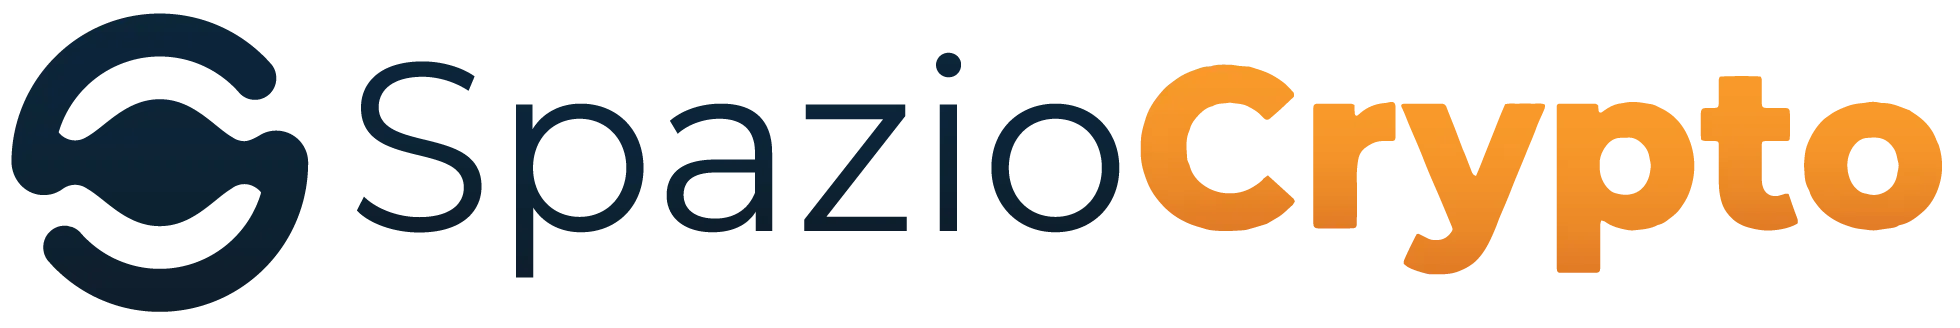 Spaziocrypto | Die italienische Web3-Gemeinschaft Symbol